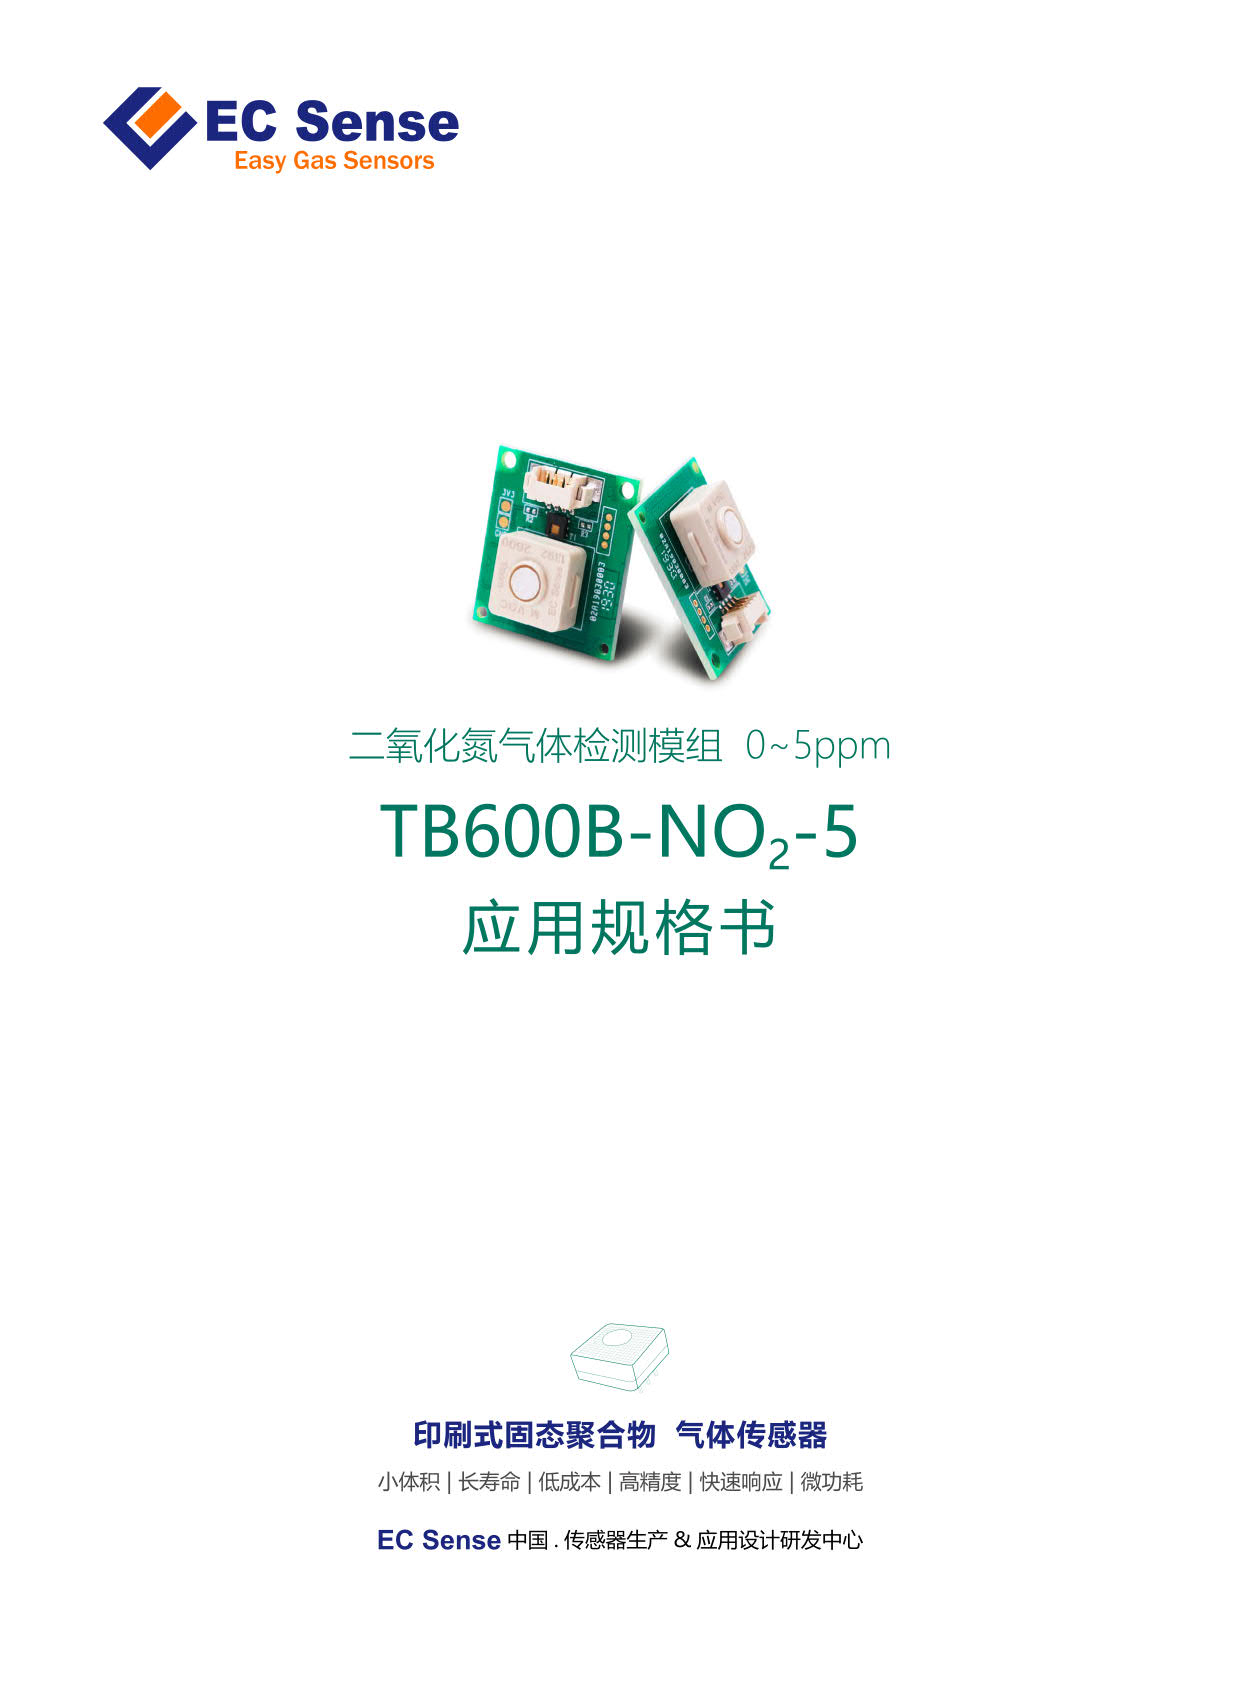 TB600B二氧化氮检测模组_5_应用规格书_V1.0_20200422_1.jpg